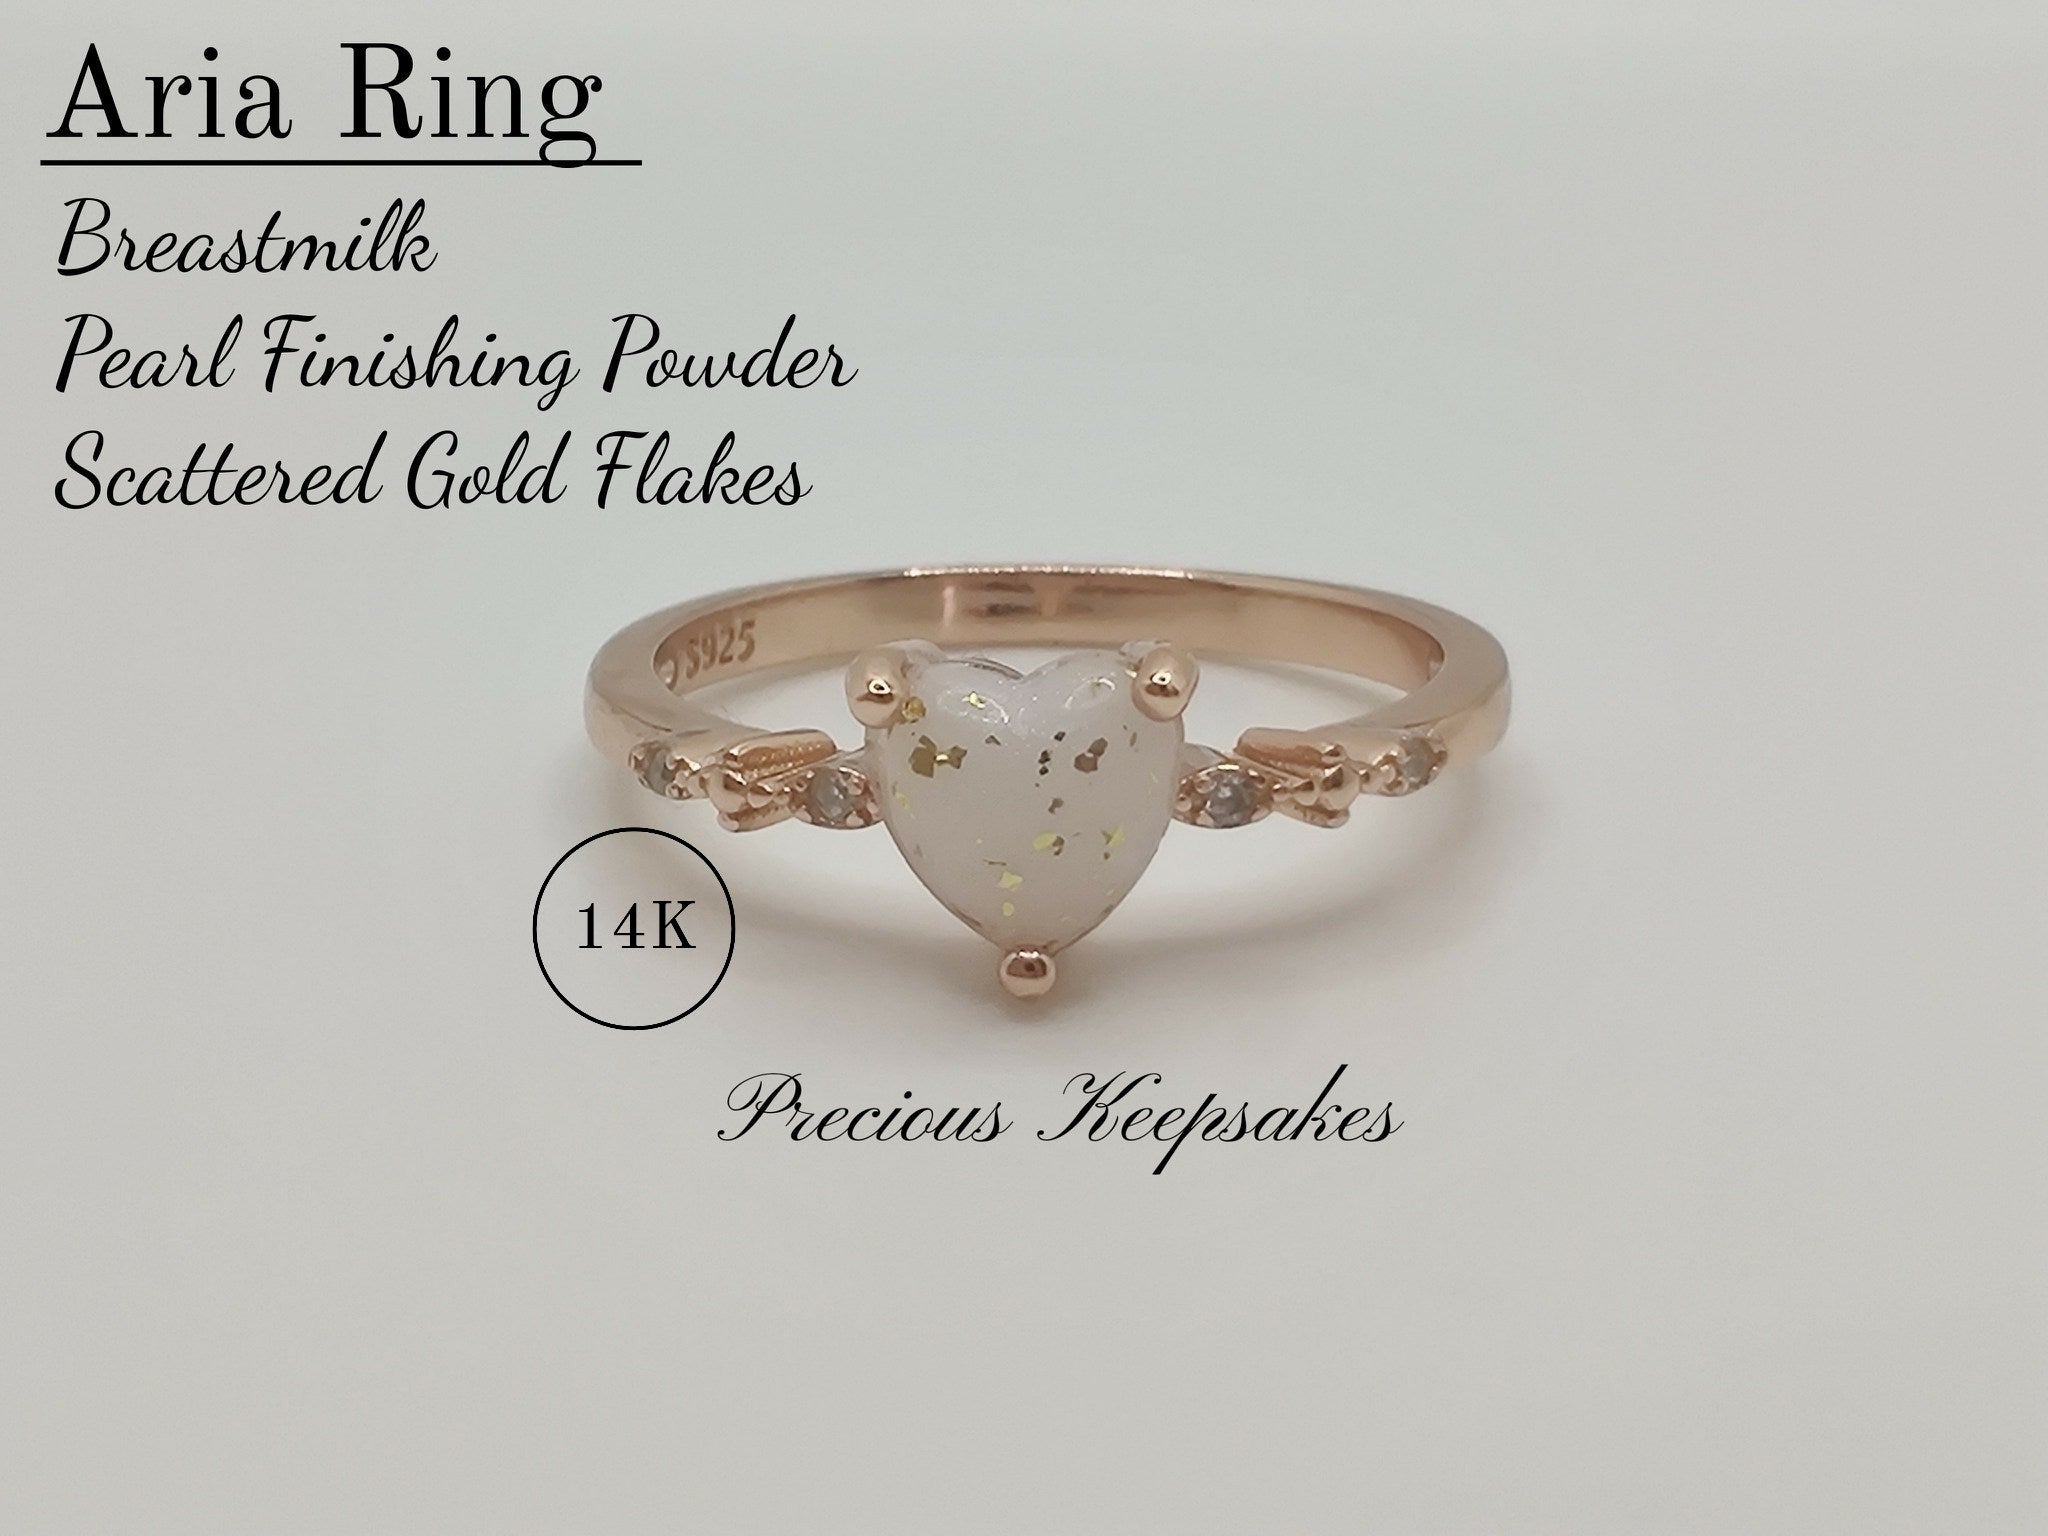 Aria Ring 14K